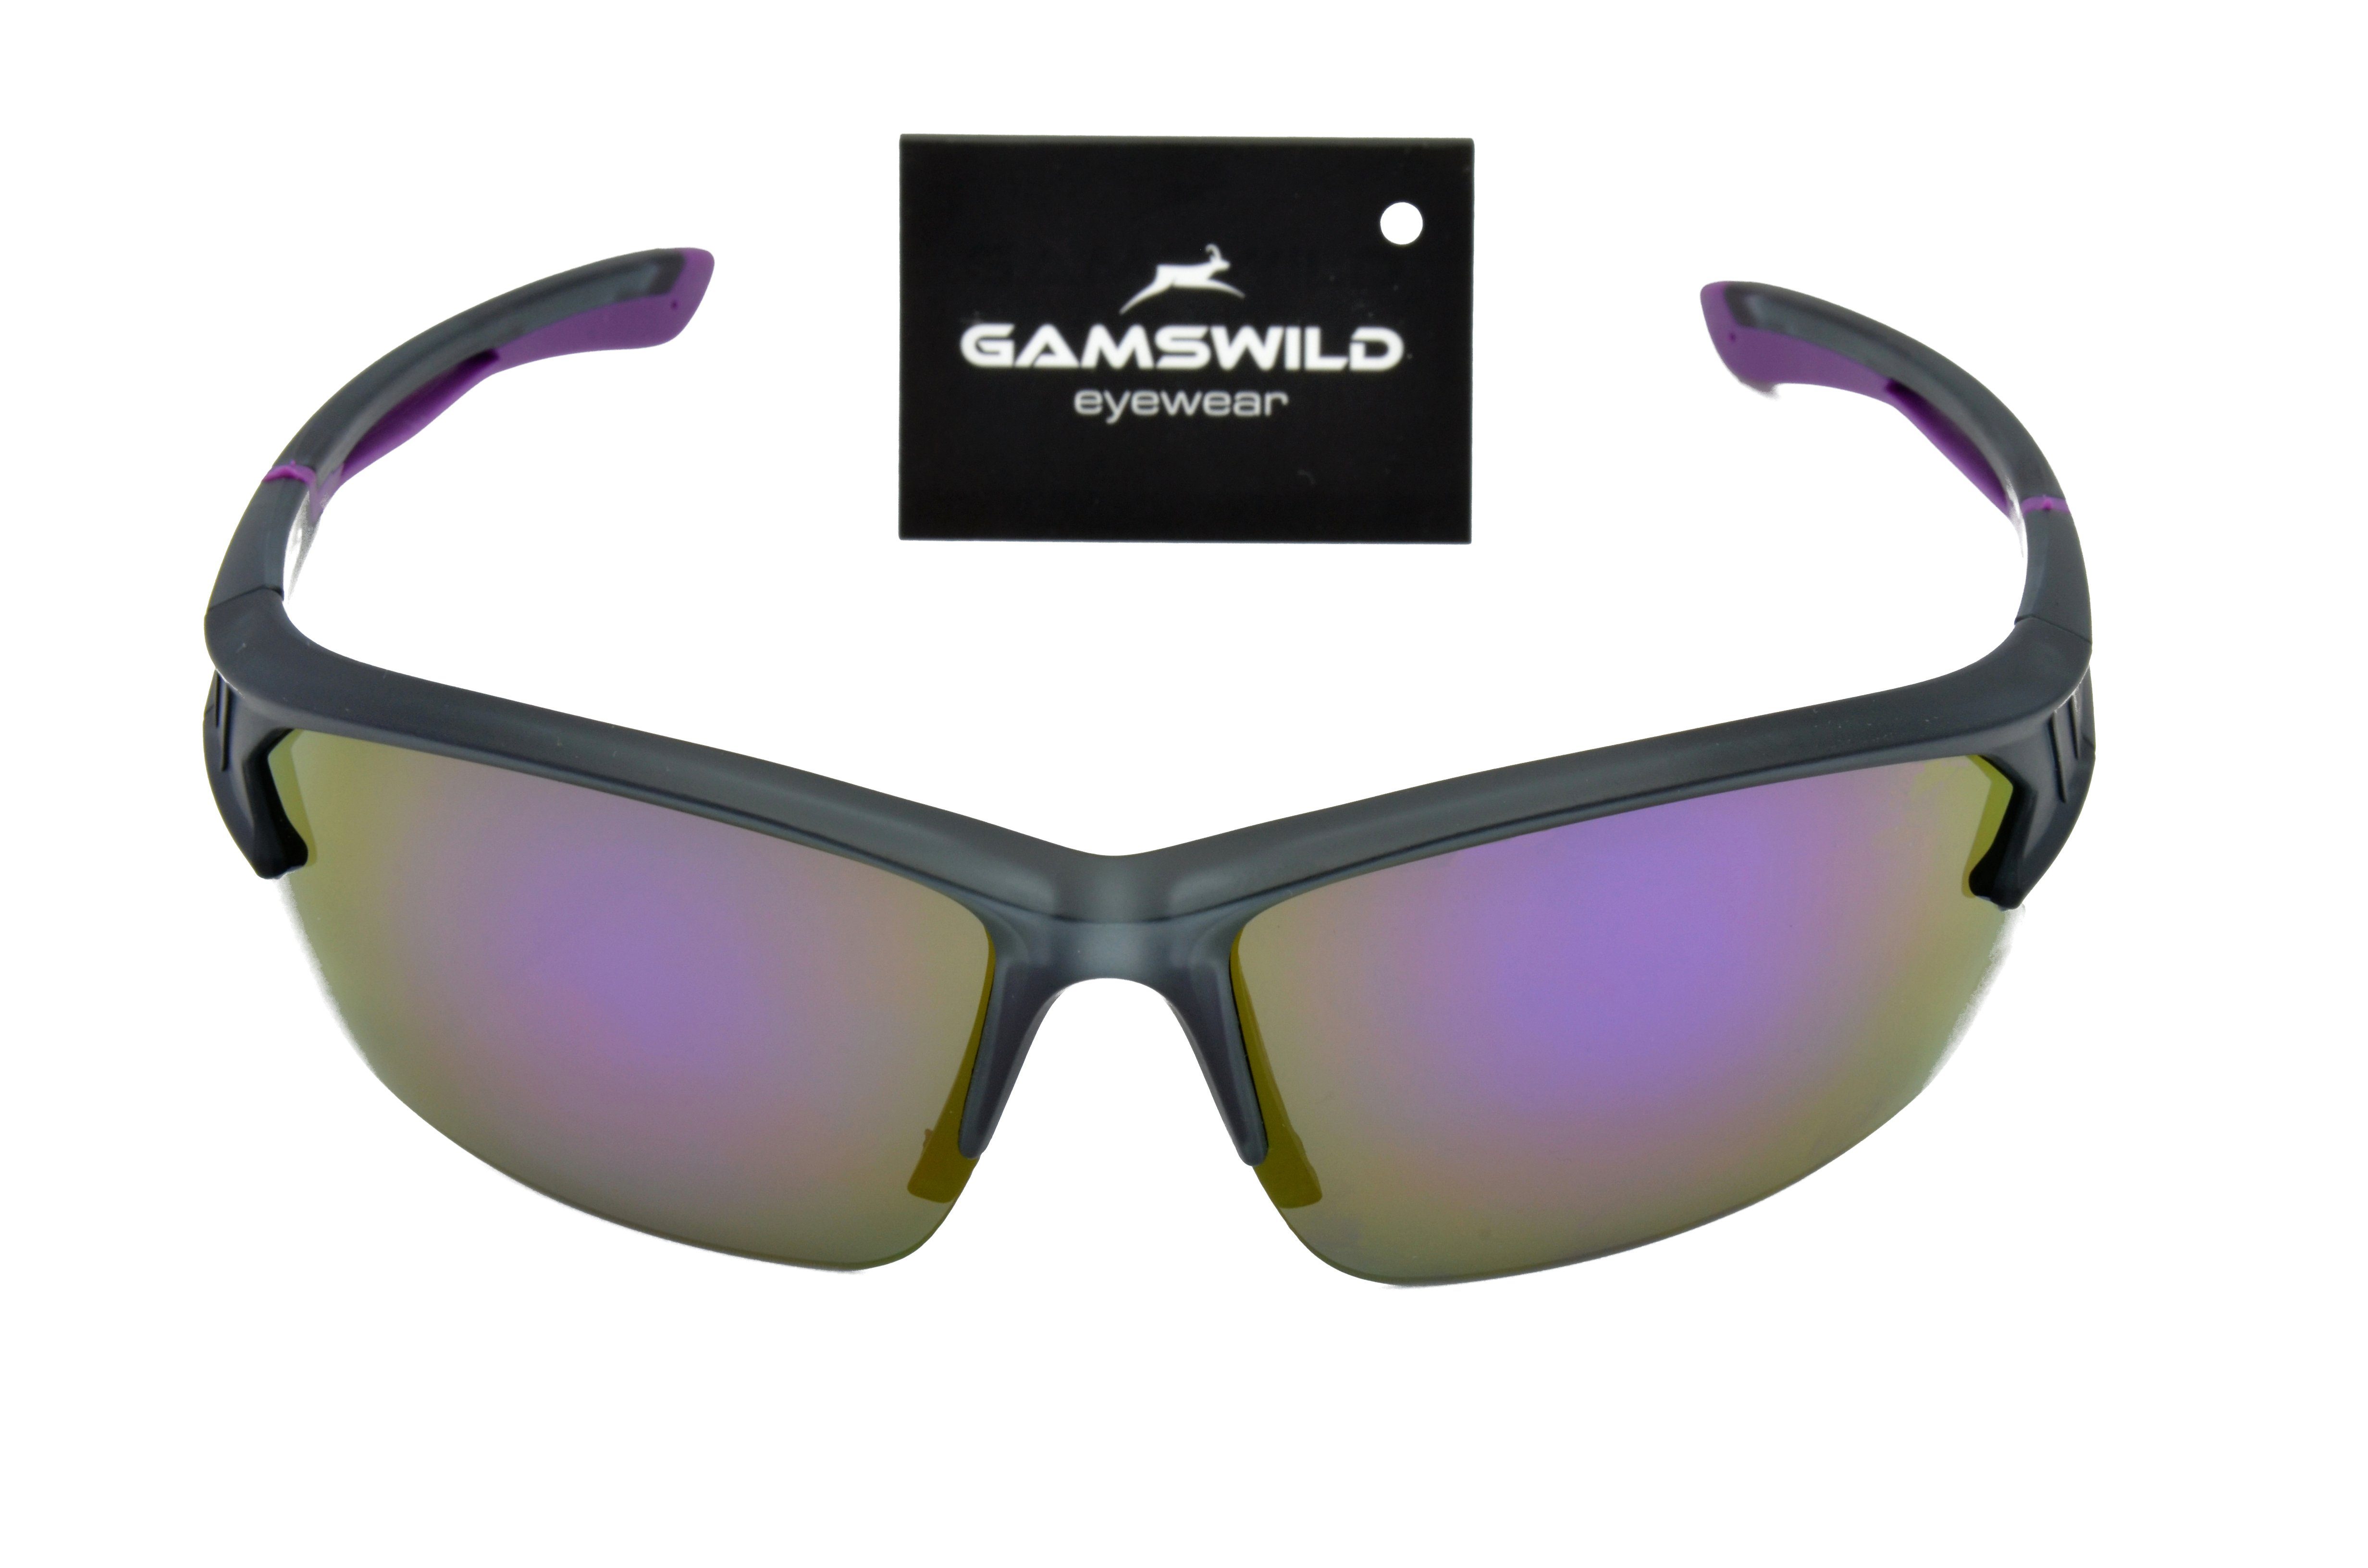 Herren rot-orange, Damen blau, WS6028 Halbrahmenbrille Skibrille Unisex, violett, Gamswild Sonnenbrille Fahrradbrille Sportbrille